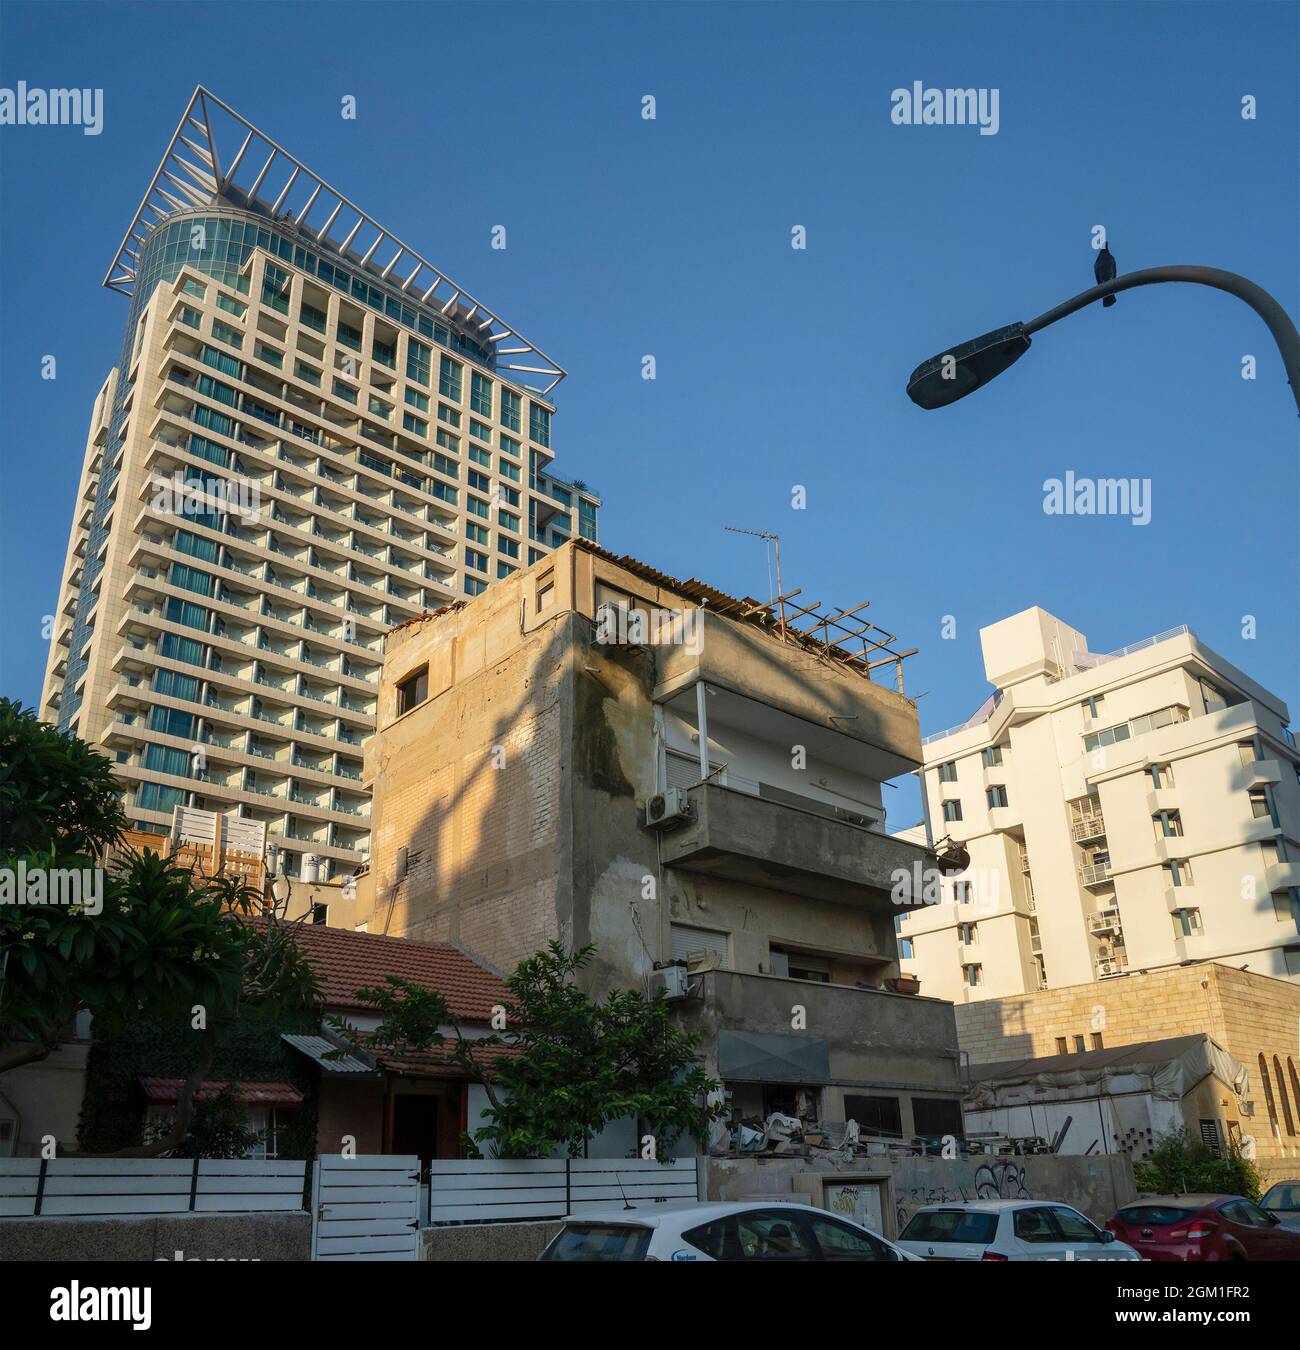 Tel Aviv, Israel - 20. August 2021: Ein altes, vernachlässigtes Gebäude inmitten moderner Gebäude in einer Tel Aviv-Straße. Stockfoto